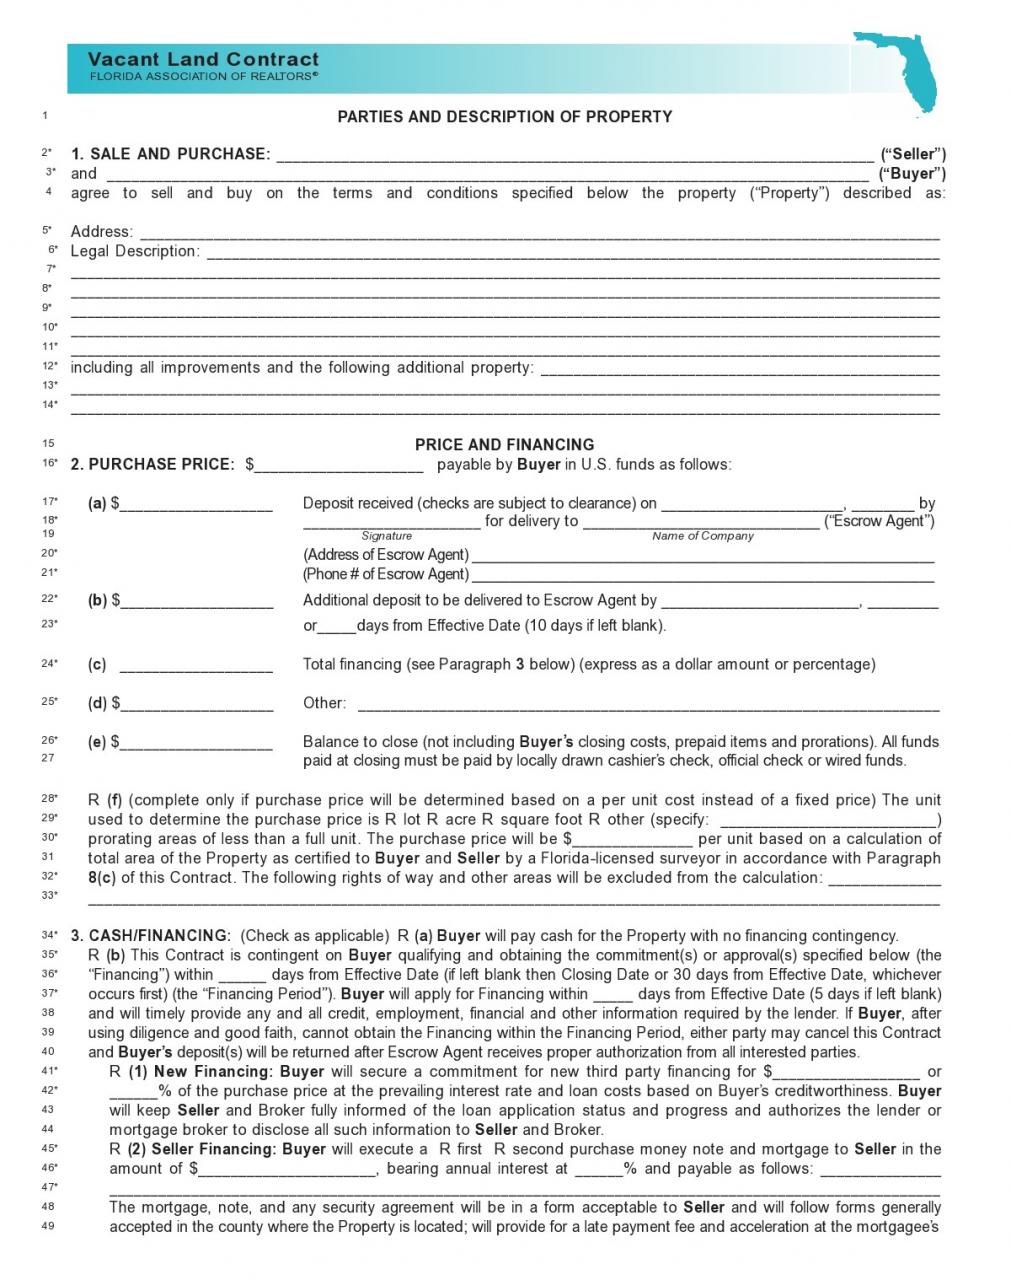 formulario de contrato de tierra gratis 05